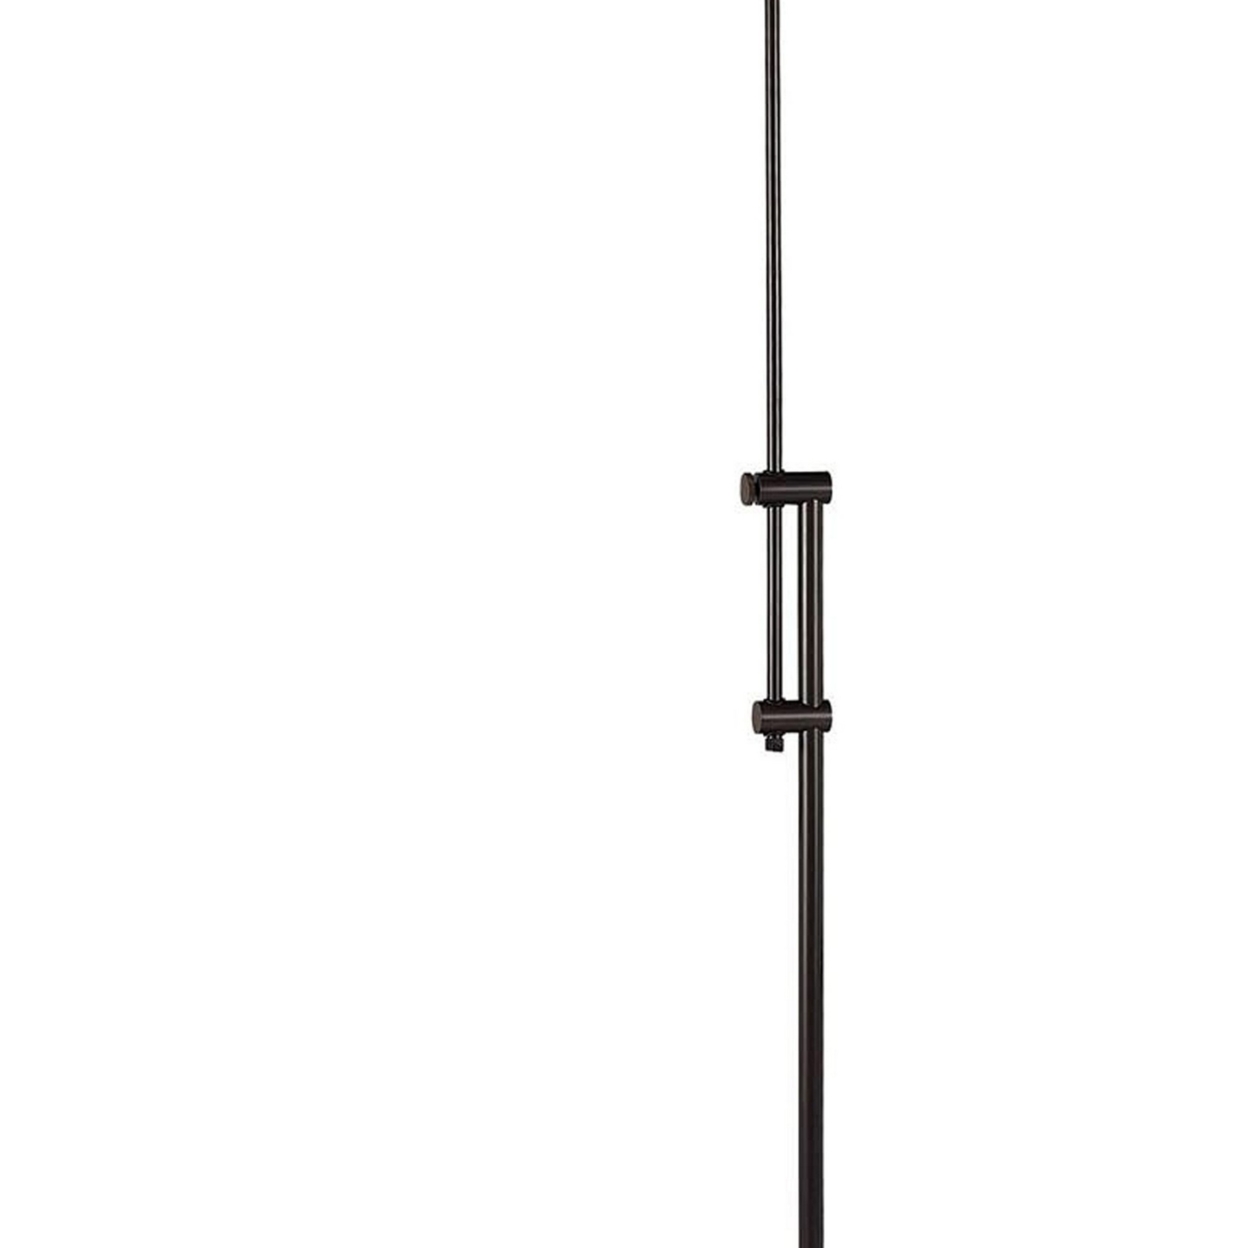 3 Way Metal Floor Lamp With And Adjustable Height Mechanism, Bronze- Saltoro Sherpi